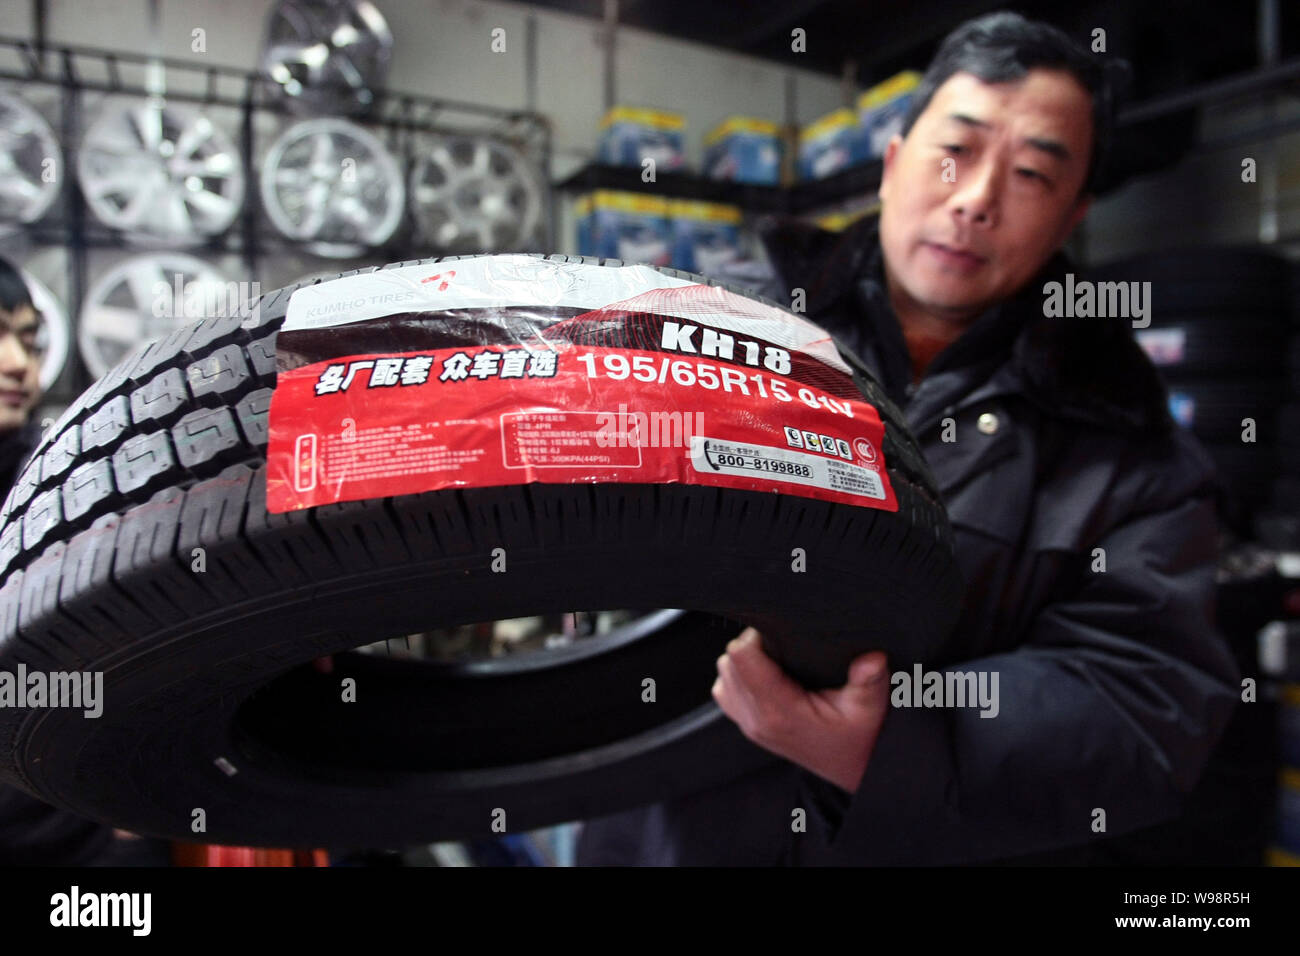 Un travailleur chinois montre un pneu de pneus Kumho Co. à un marché de  pièces d'automobile à Shanghai, Chine, 21 mars 2011. Fabricant de pneus sud- coréen Kumho Tyres Co Photo Stock -